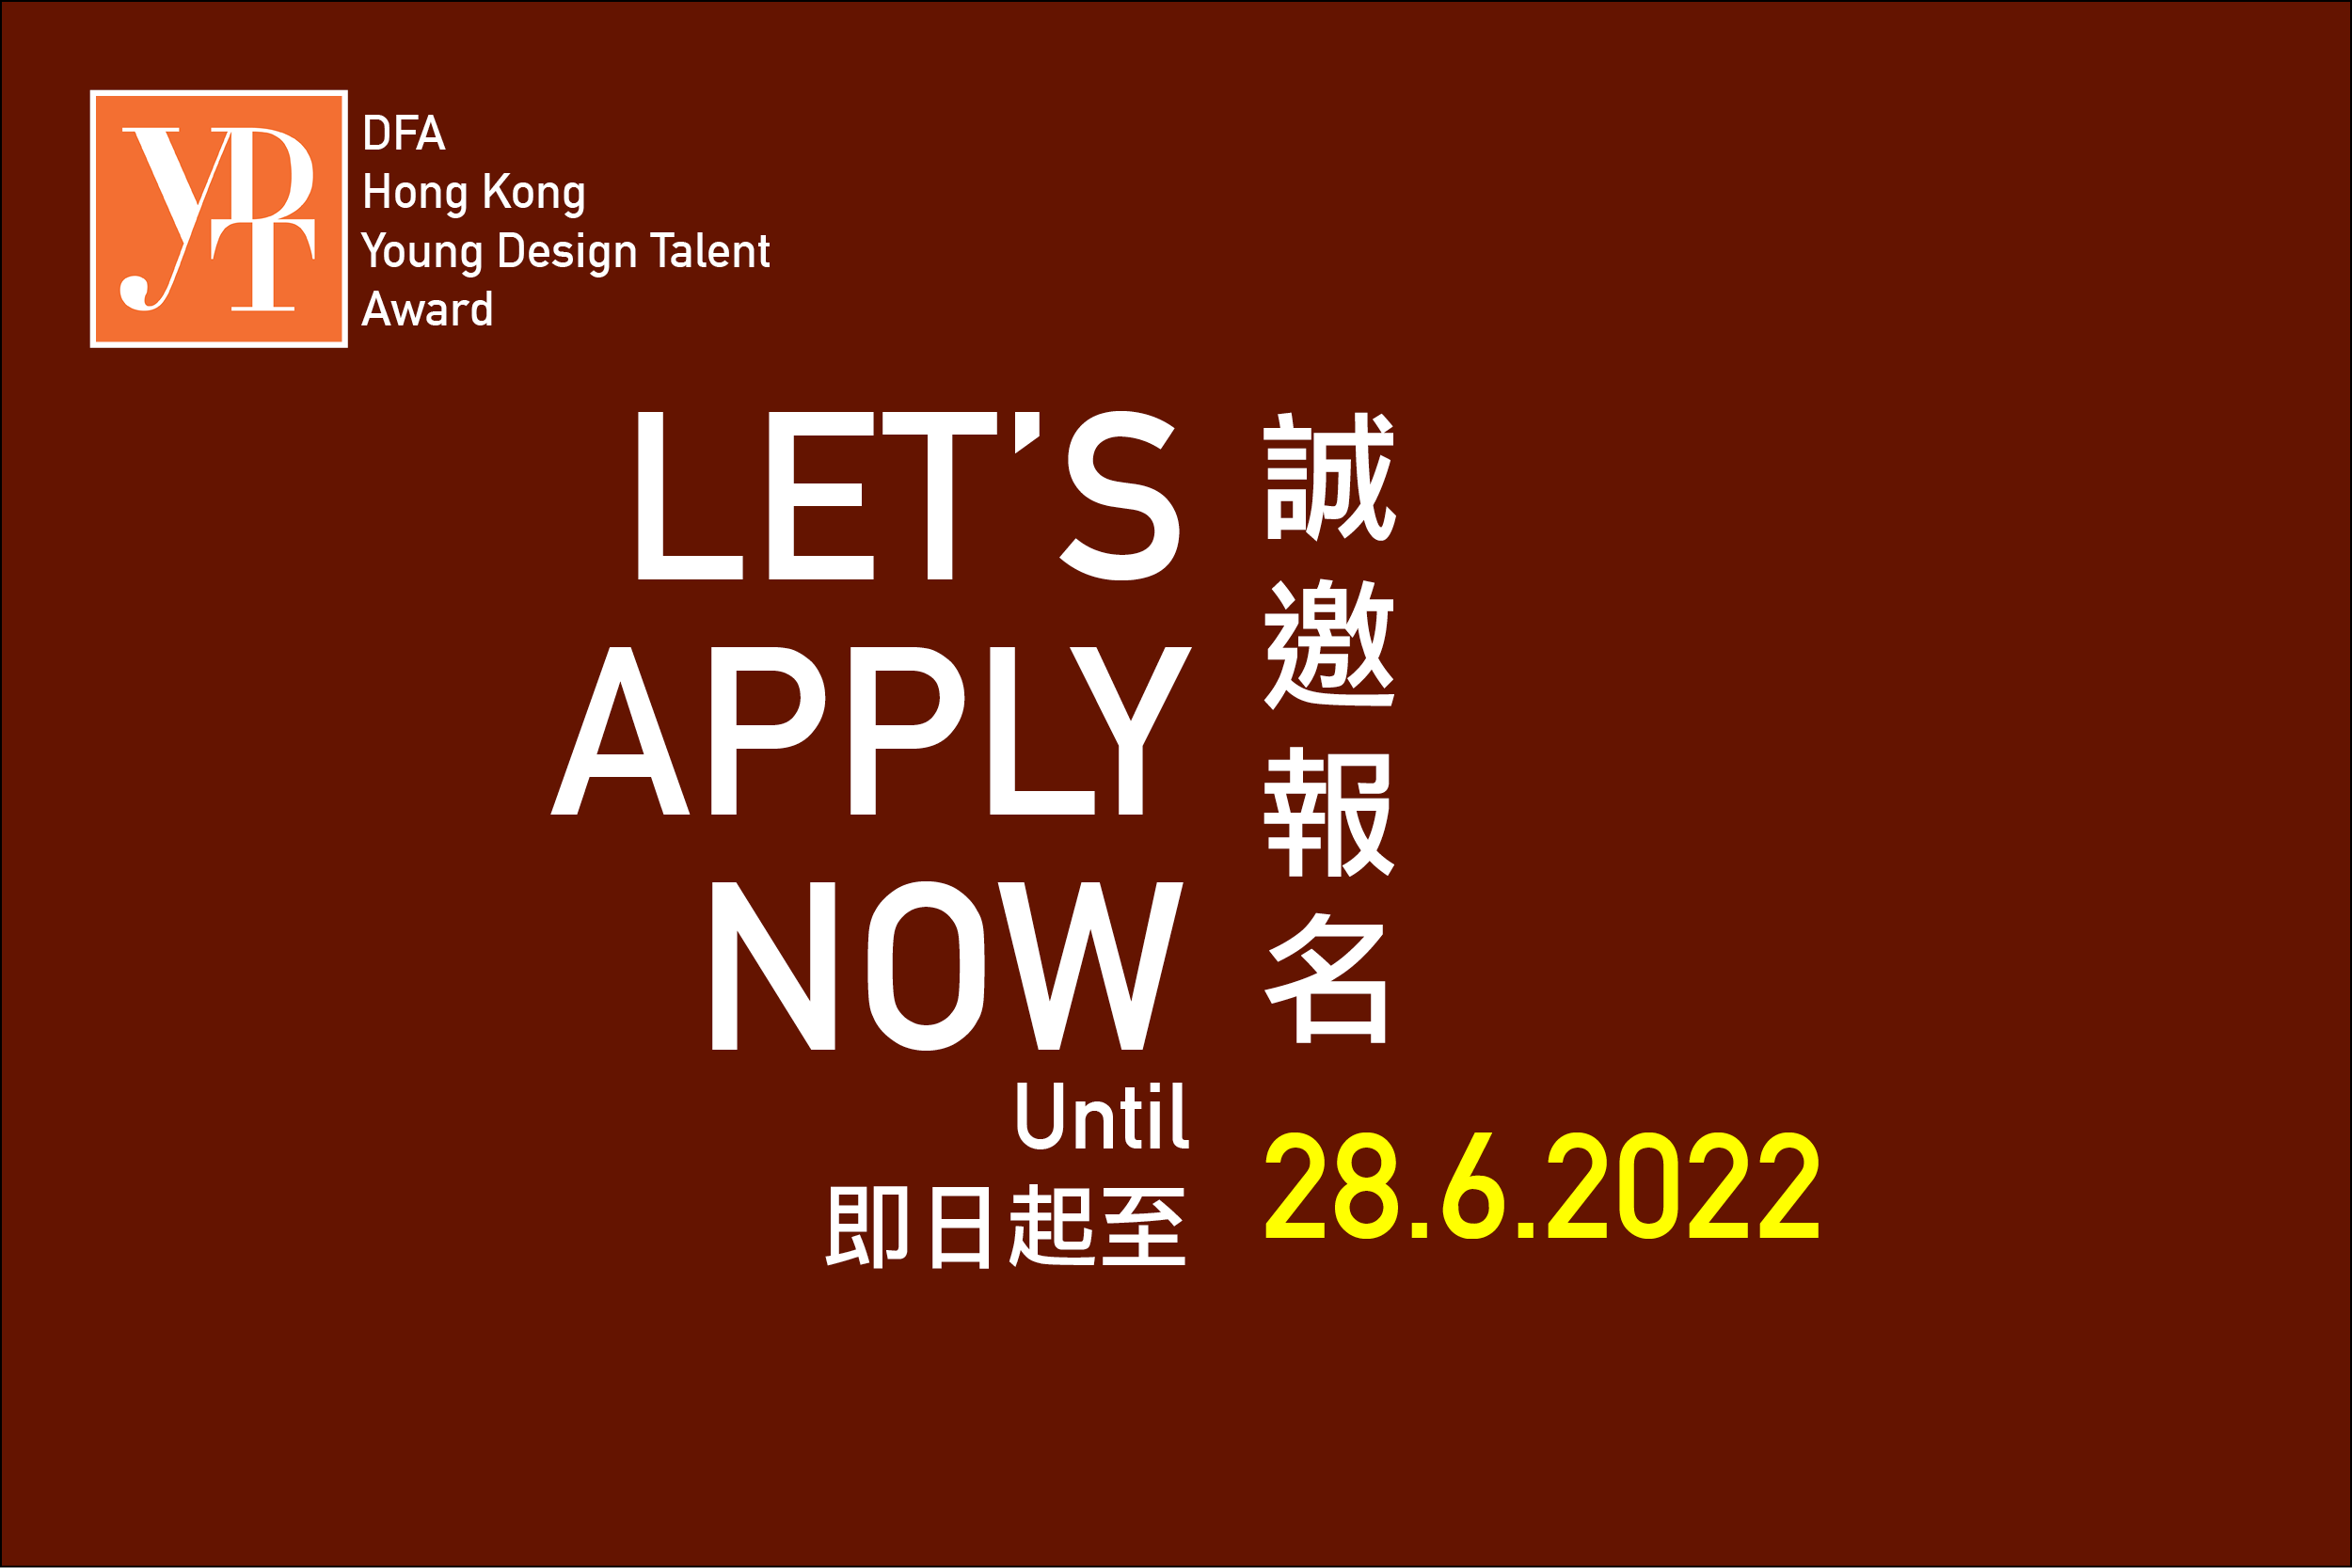 DFA 香港青年设计才俊奖 2022 现正接受报名至 6 月 28 日